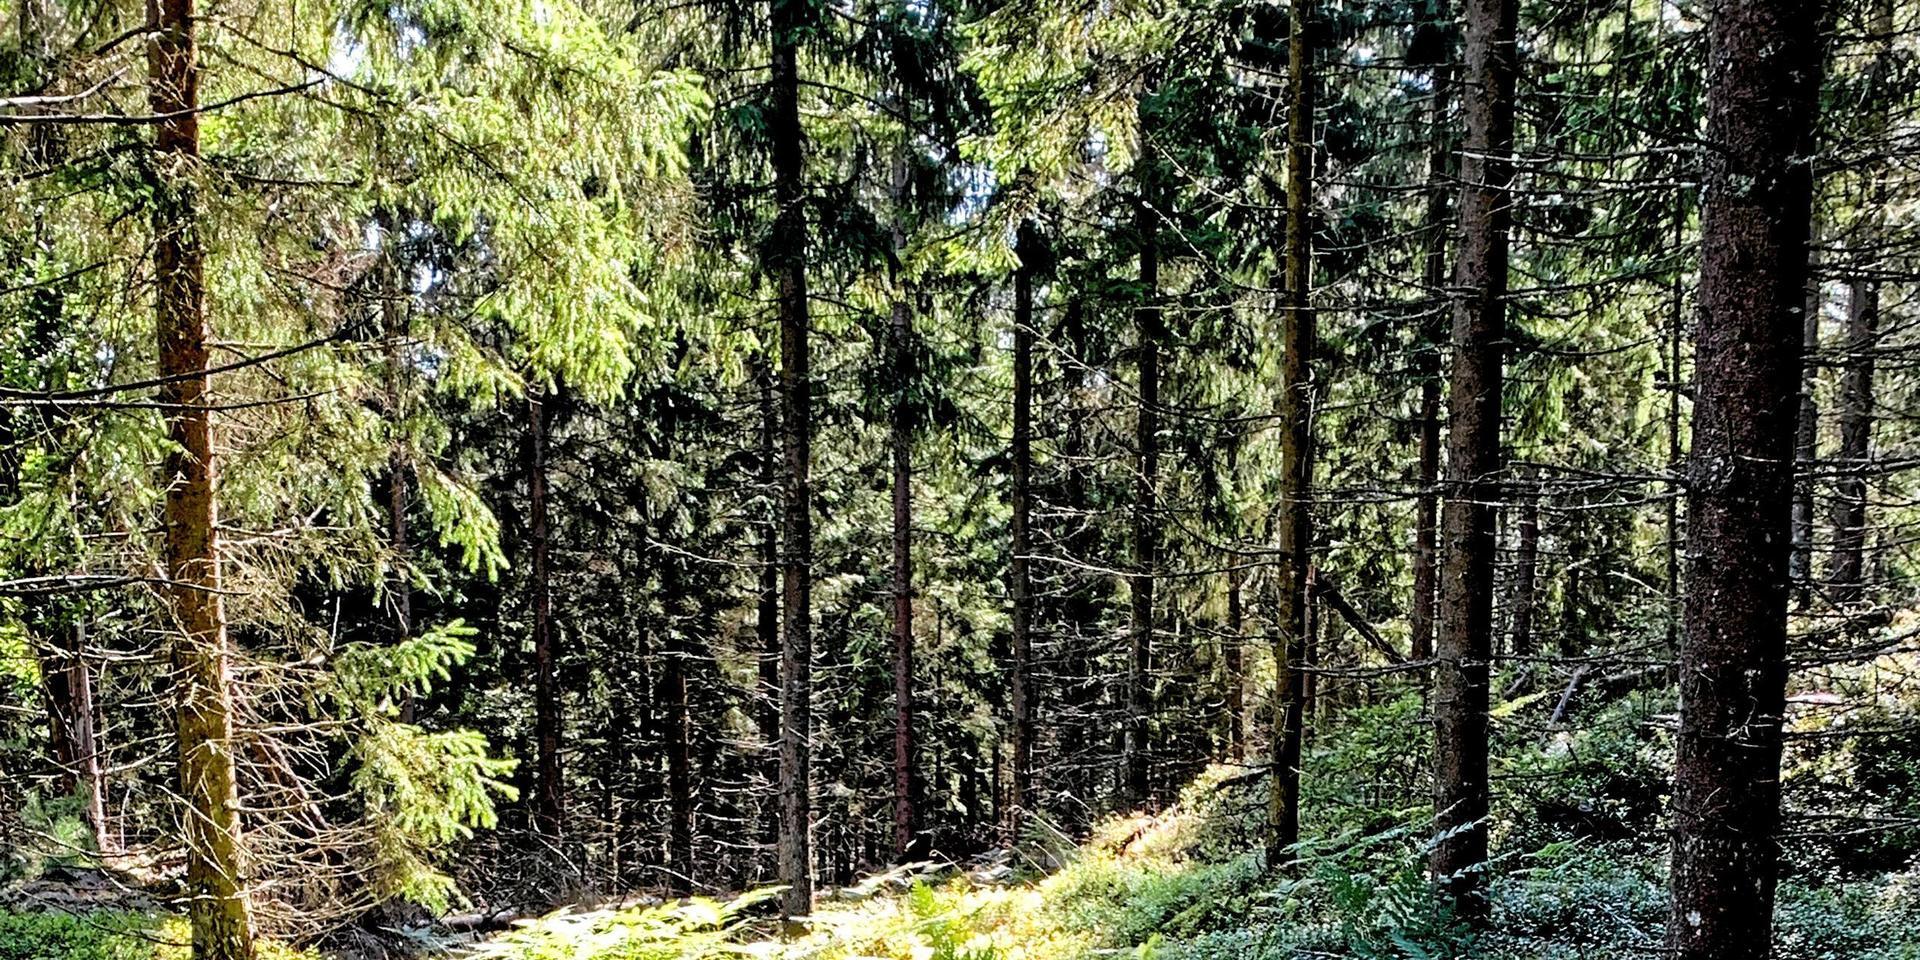 Risvedens underbara skog har blivit ett offer för en exploatering, där resultatet har blivit en hjärtskärande katastrof, skriver signaturen ARE.